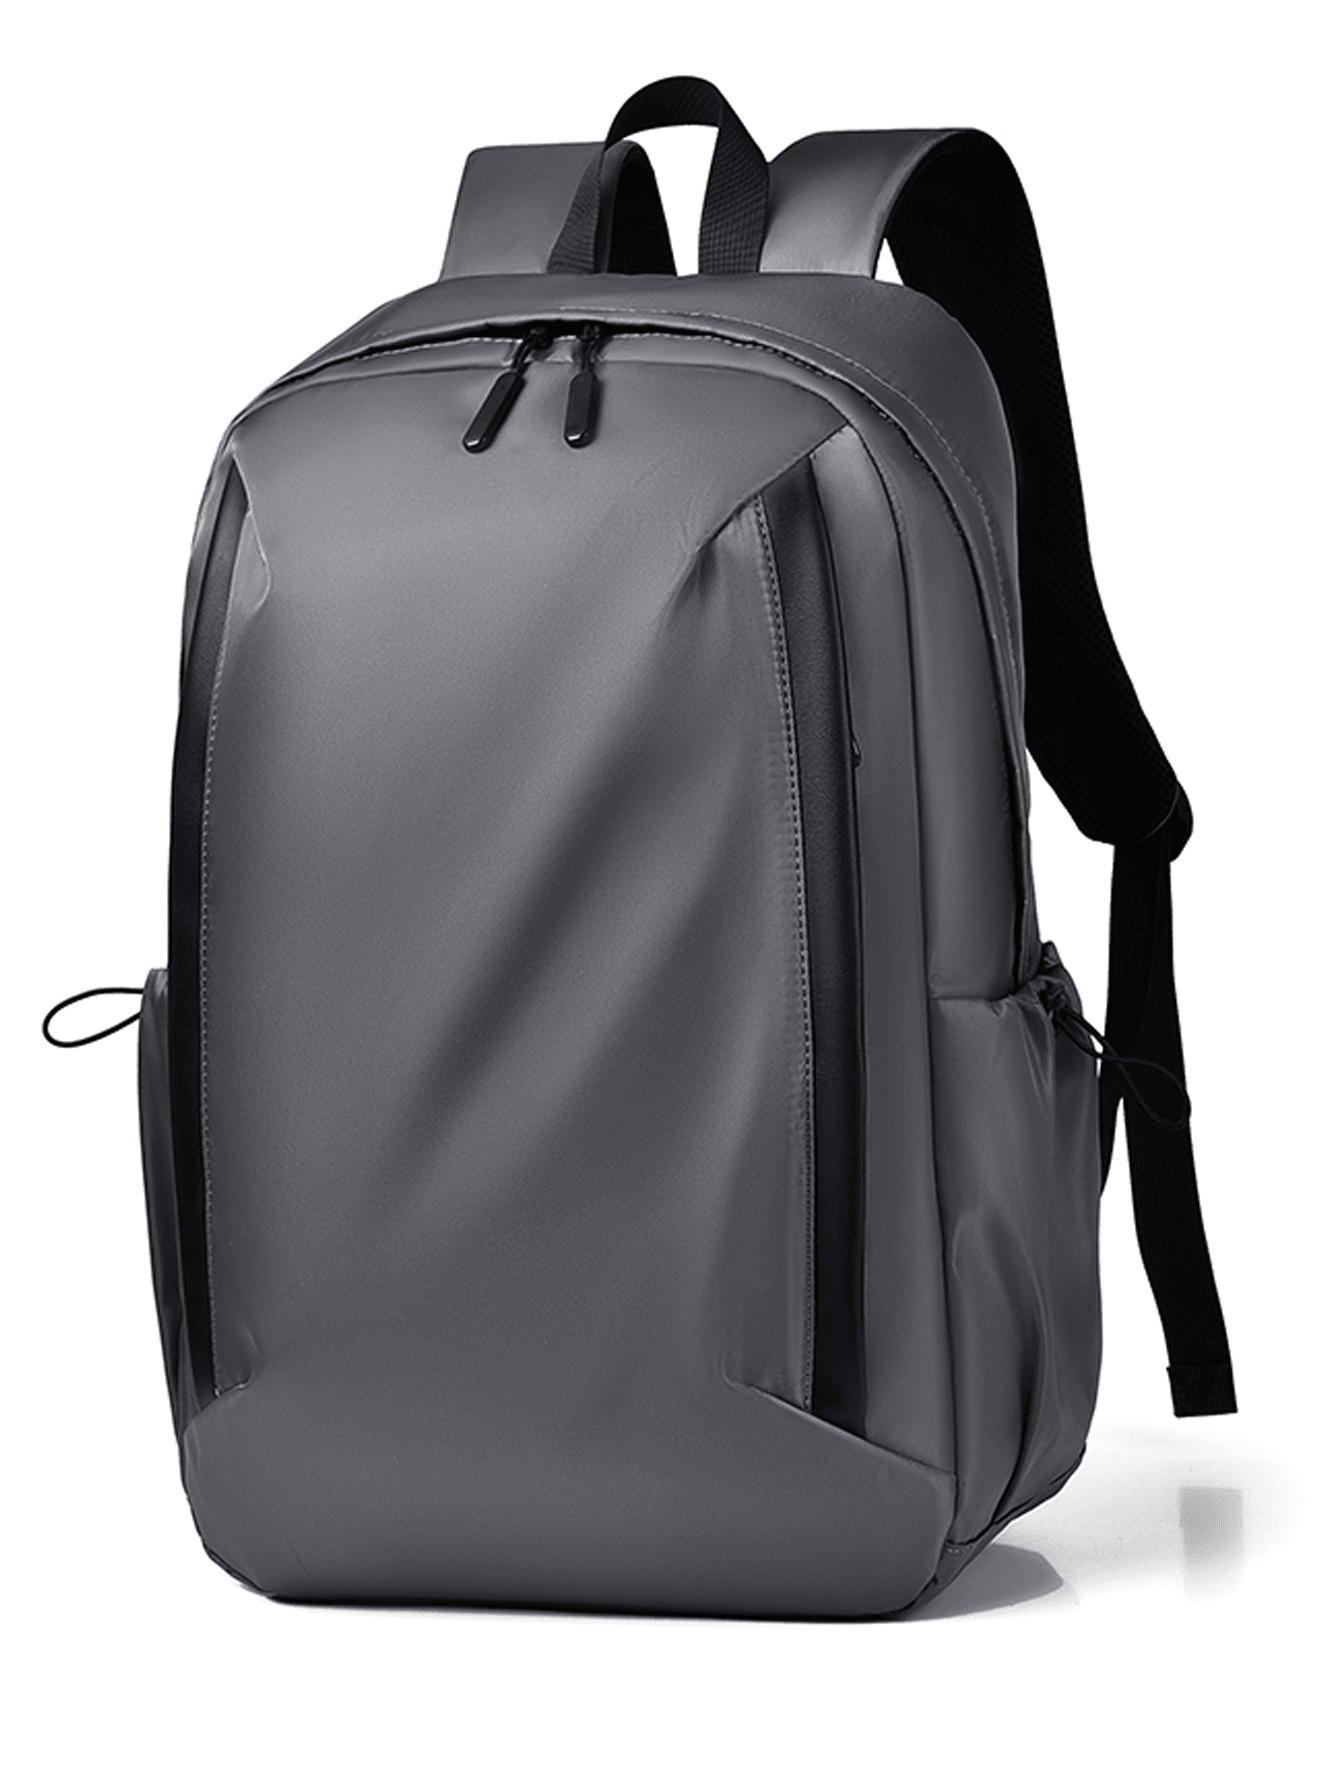 Мужской функциональный рюкзак большой вместимости, серый